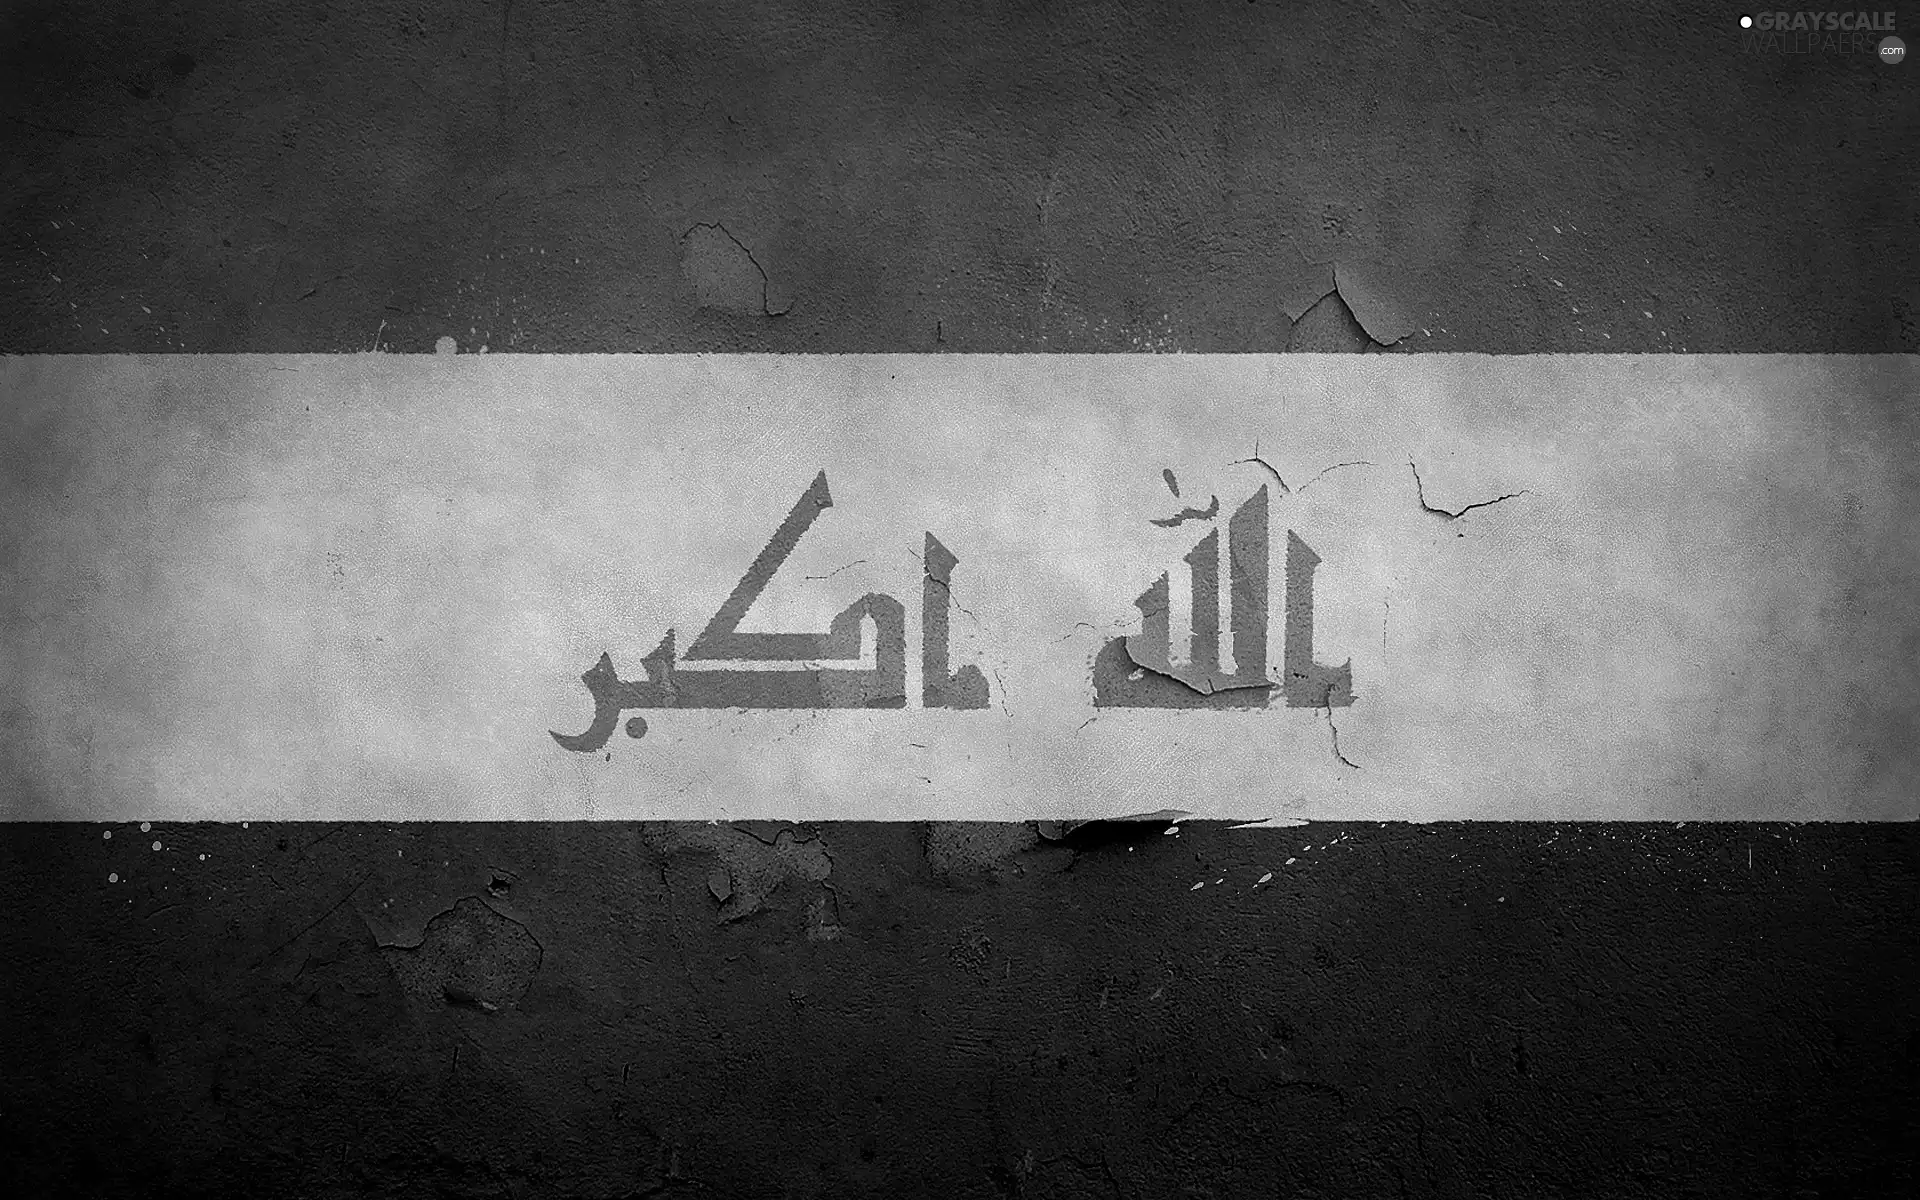 flag, iraq